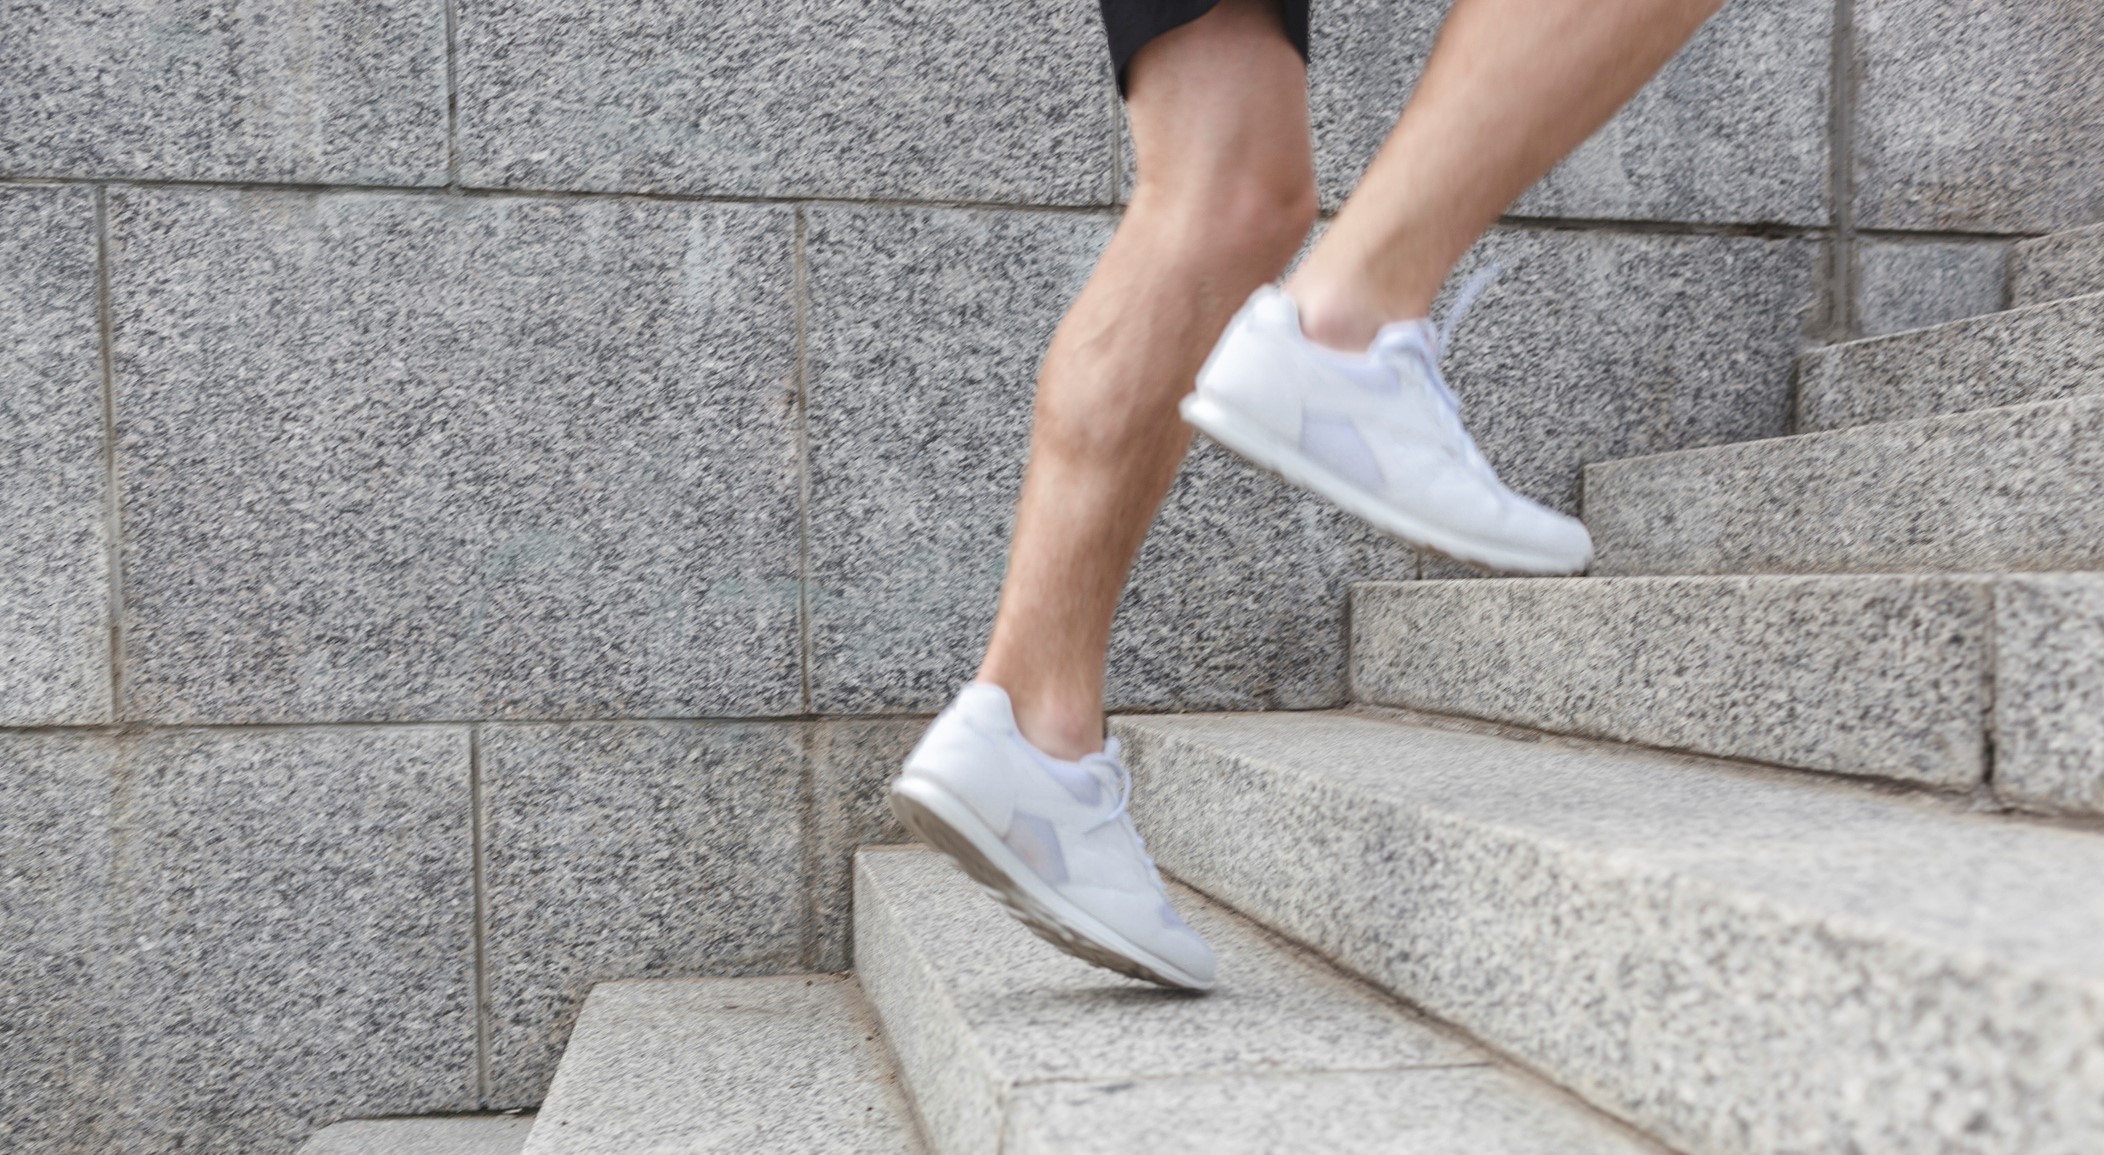 階段走り のダイエット効果とは 階段を走るメリット やり方 注意点